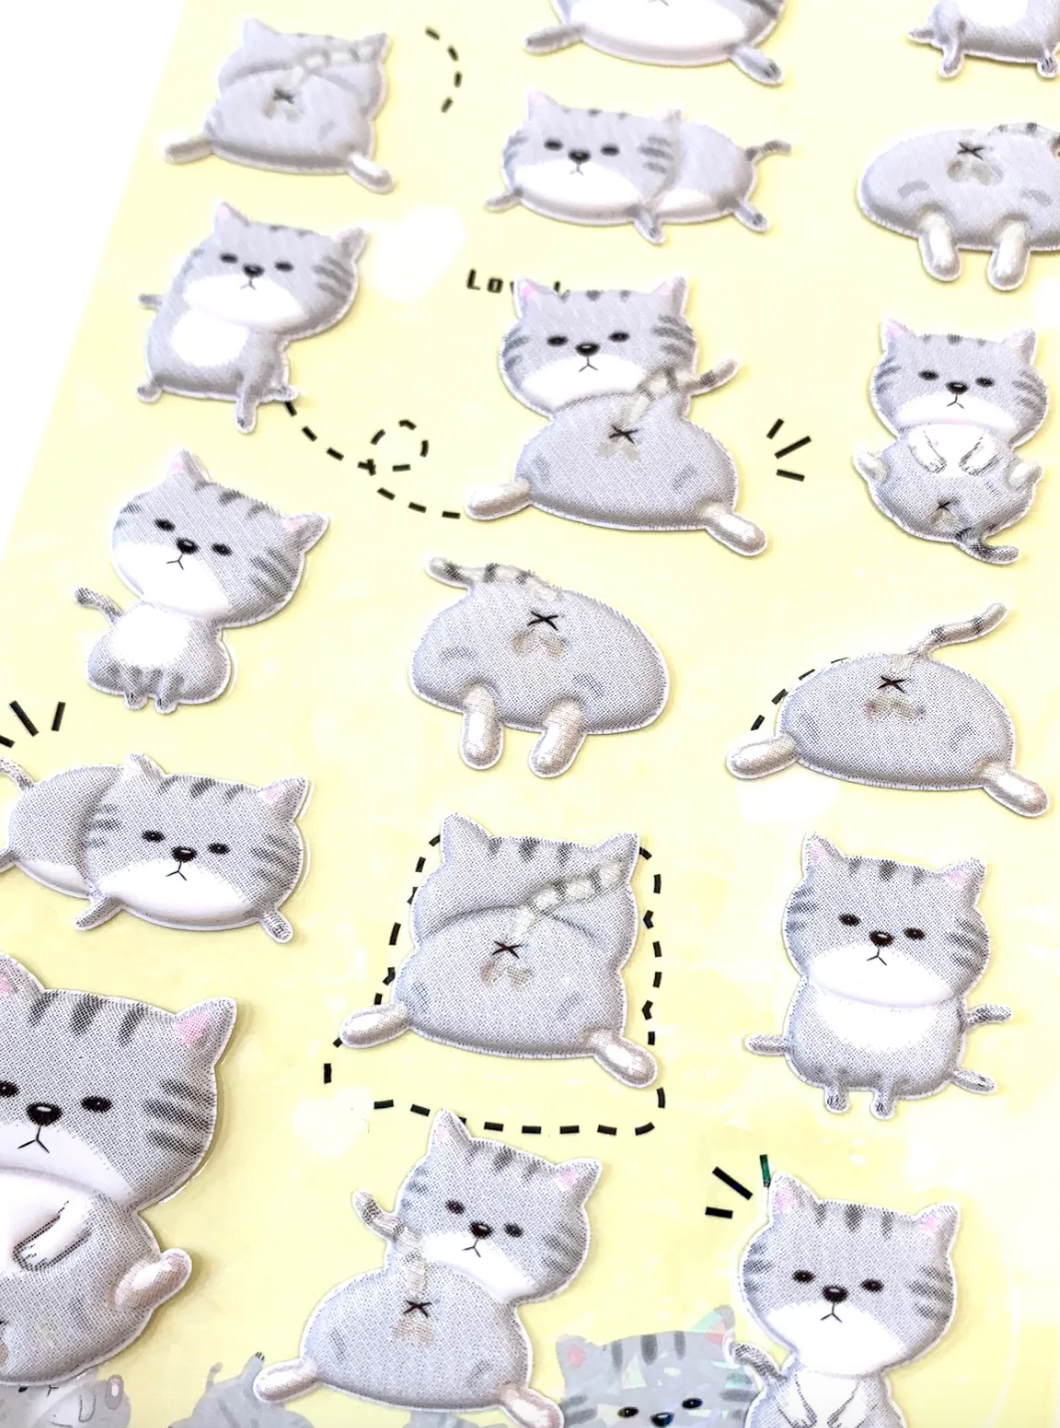 Nekoni Cat Stickers